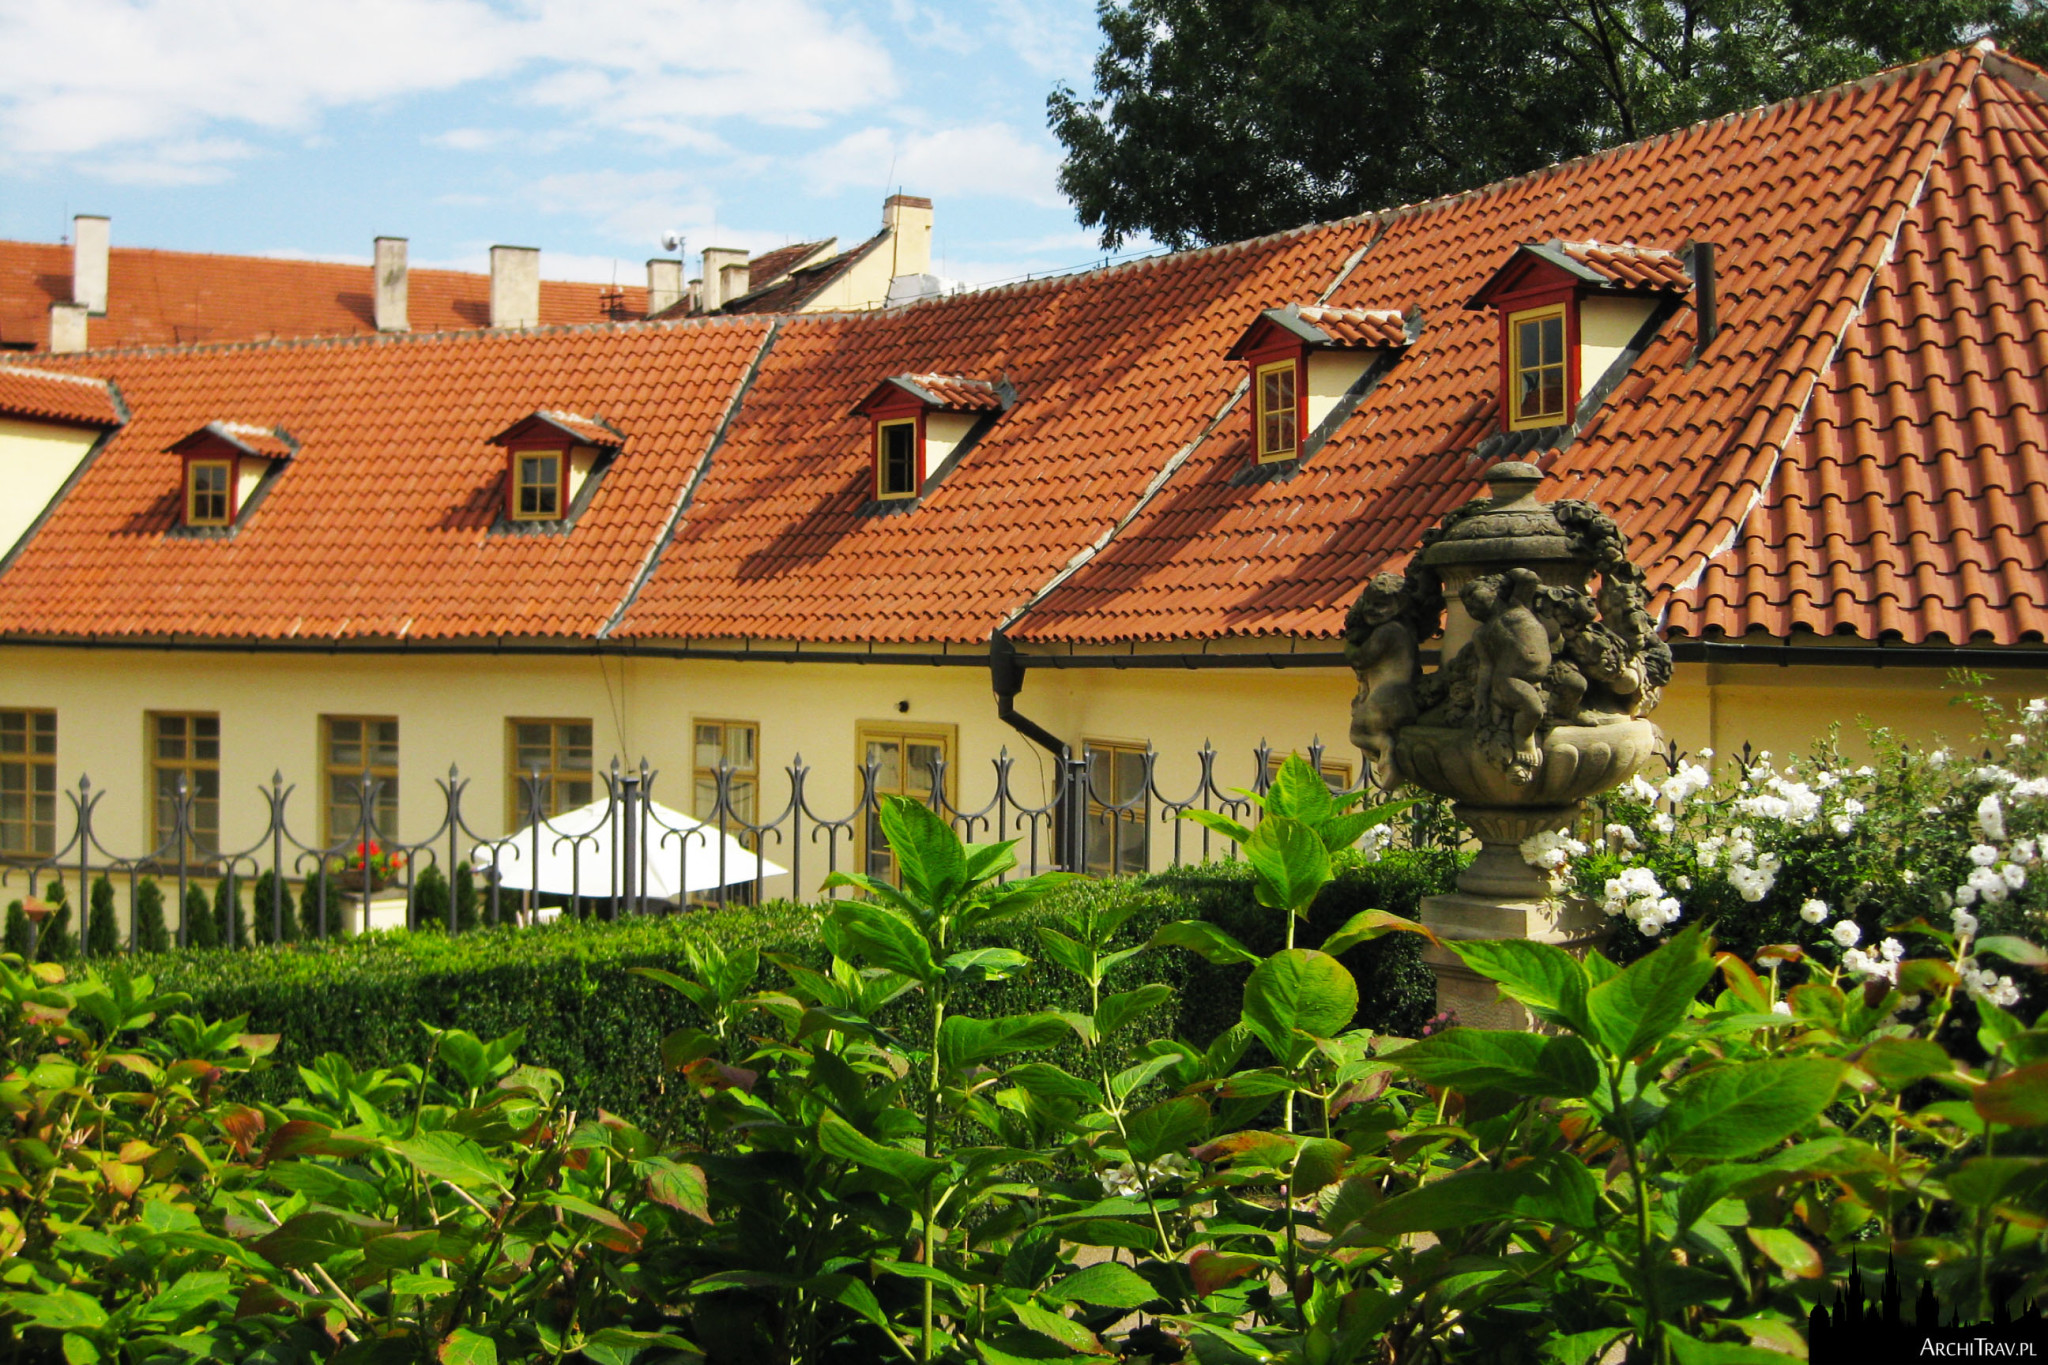 środkowy poziom w Ogrodzie Vrtbowskim, widok na zieleń i budynek pałacu Vrtbowskiego w Pradze